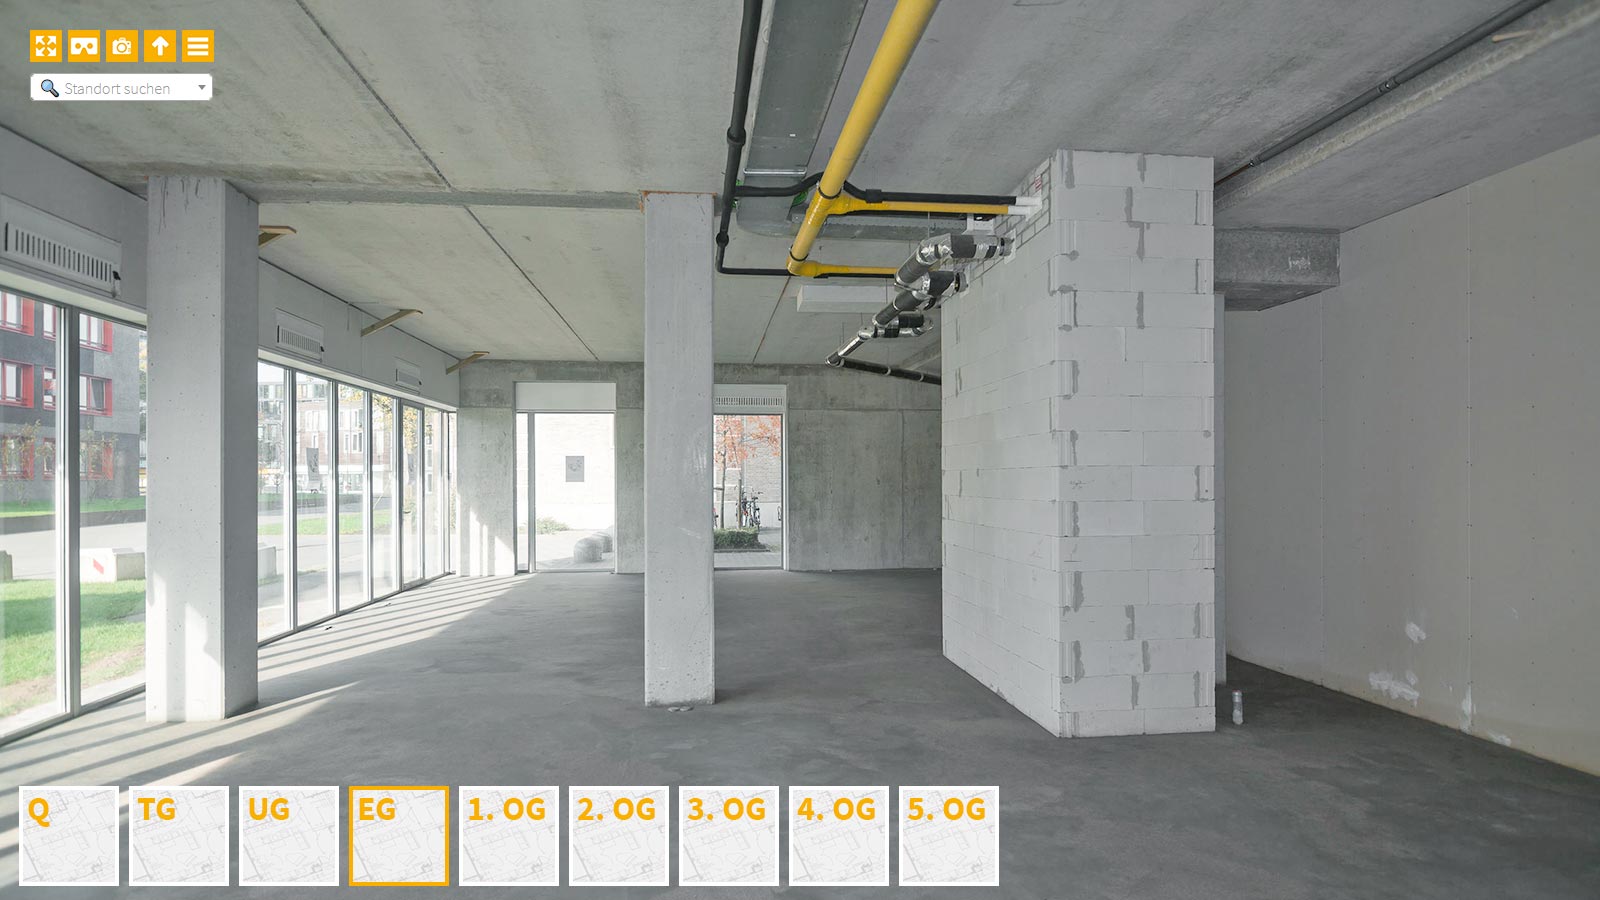 Baudokumentation 360 Grad bei gestörten Projekten in 


	


	


	


	


	


	


	


	


	


	Hagen









, Bilddokumentation als virtueller Rundgang